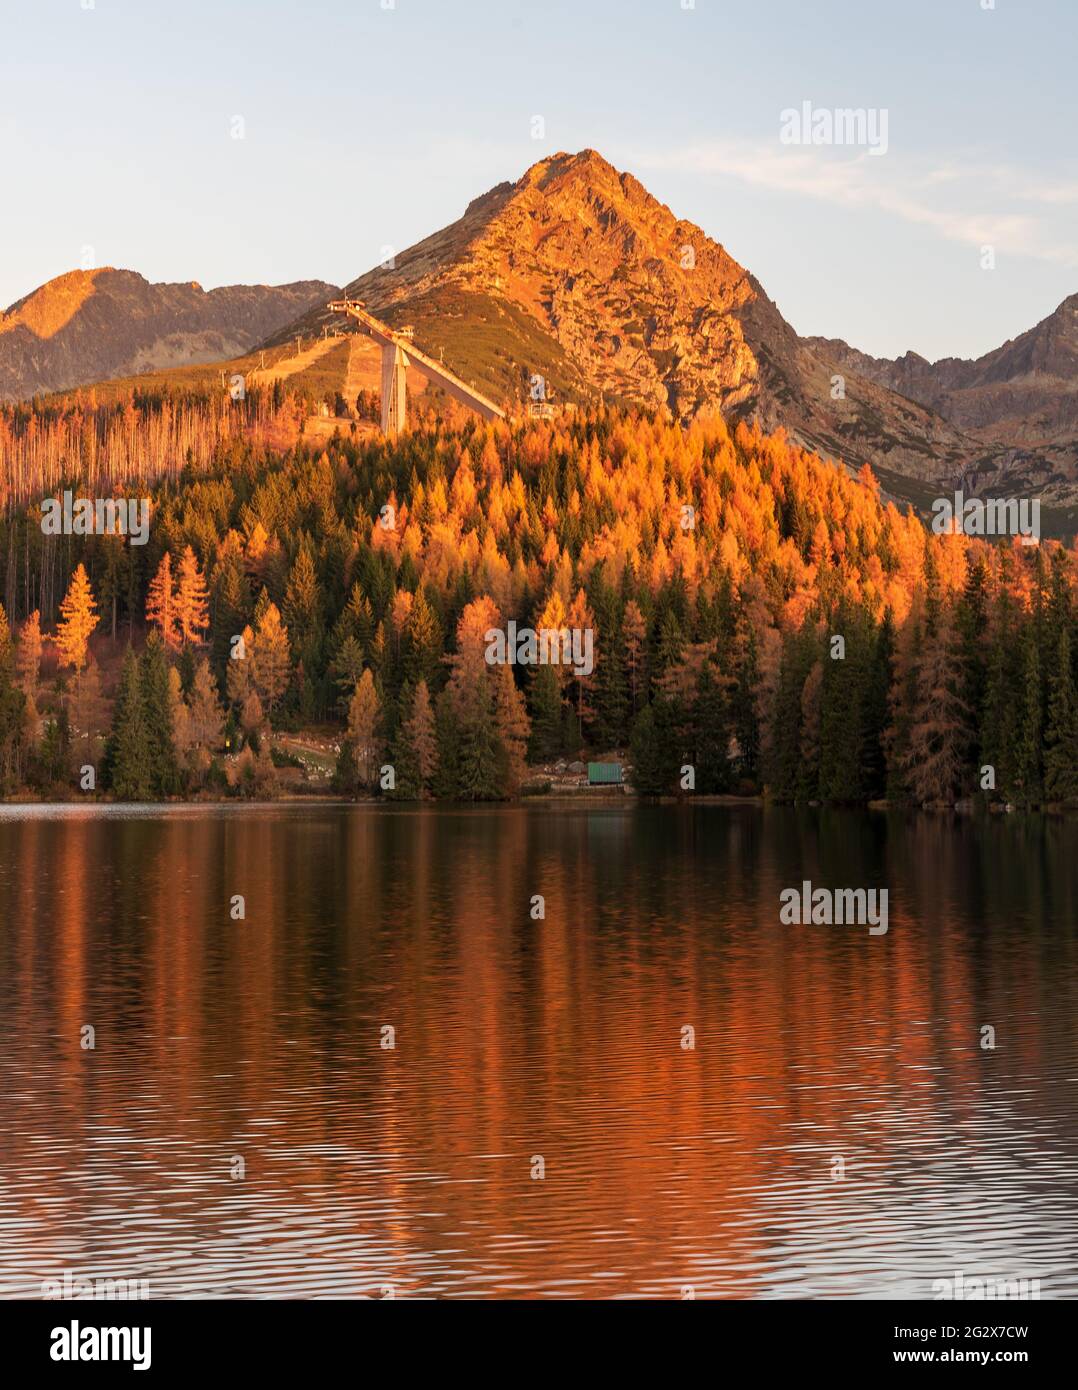 Lac Strbske pleso avec les sommets de Predne Solisko, Mlynicke Solisko et Strbske Solisko dans les montagnes Vysoke Tatry en Slovaquie pendant la mornine d'automne Banque D'Images